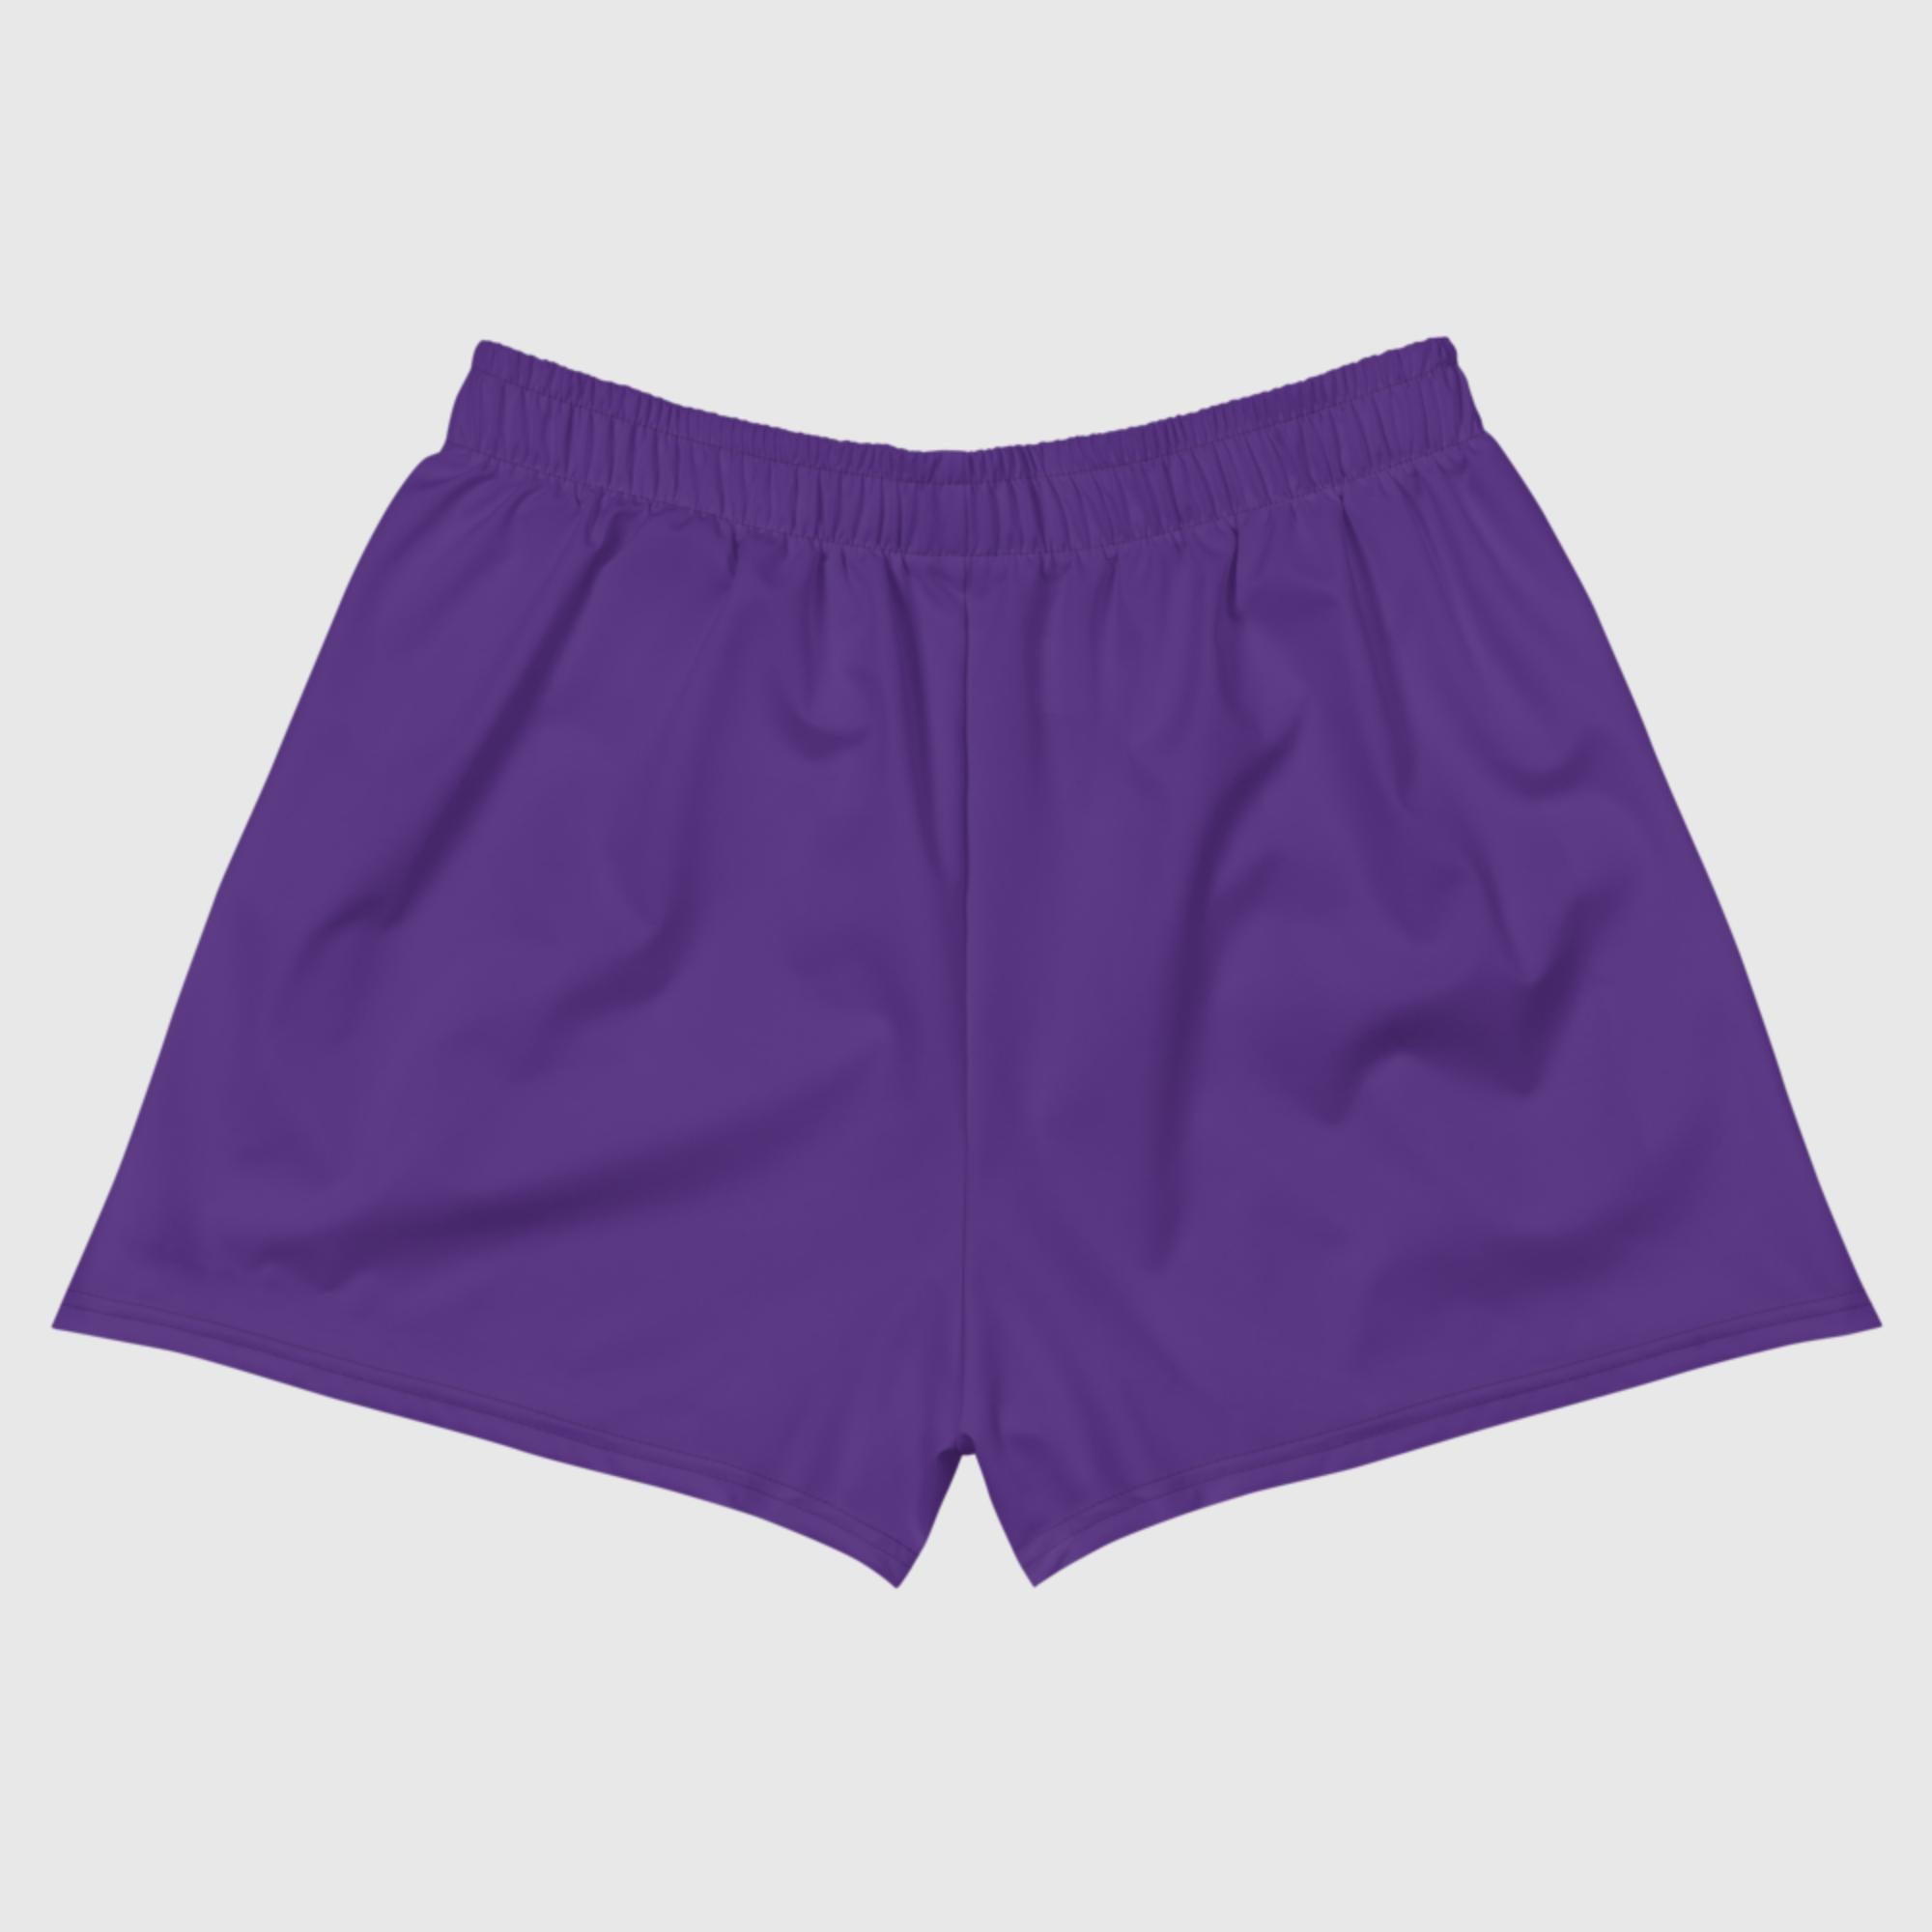 Women's Athletic Short Shorts - Indigo - Sunset Harbor Clothing